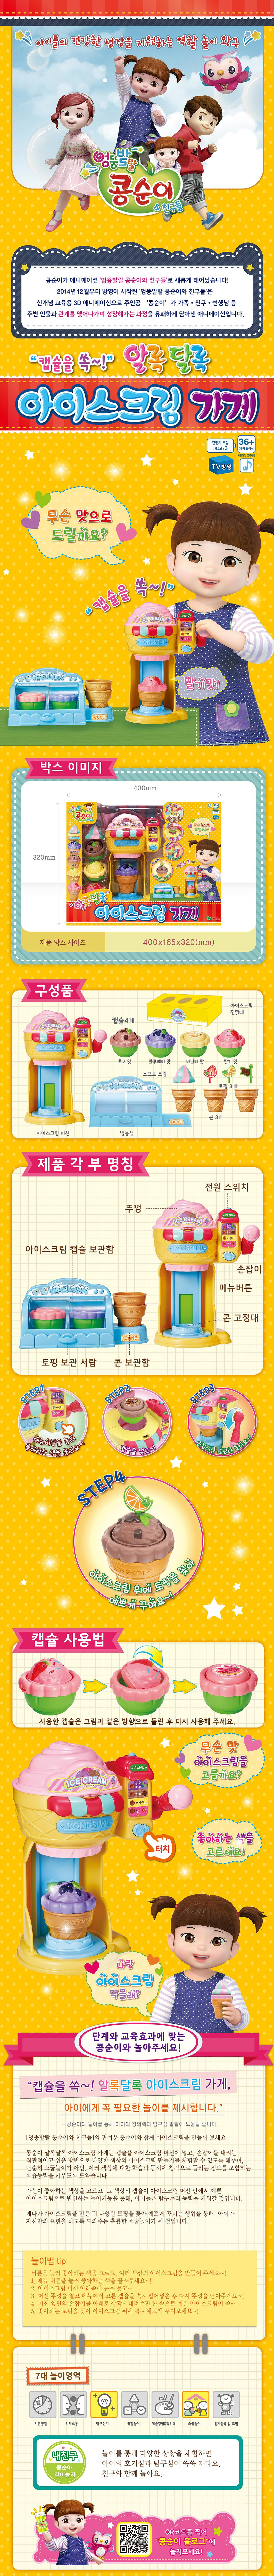 콩순이 아이스크림가게 Kongsuni Iceream store